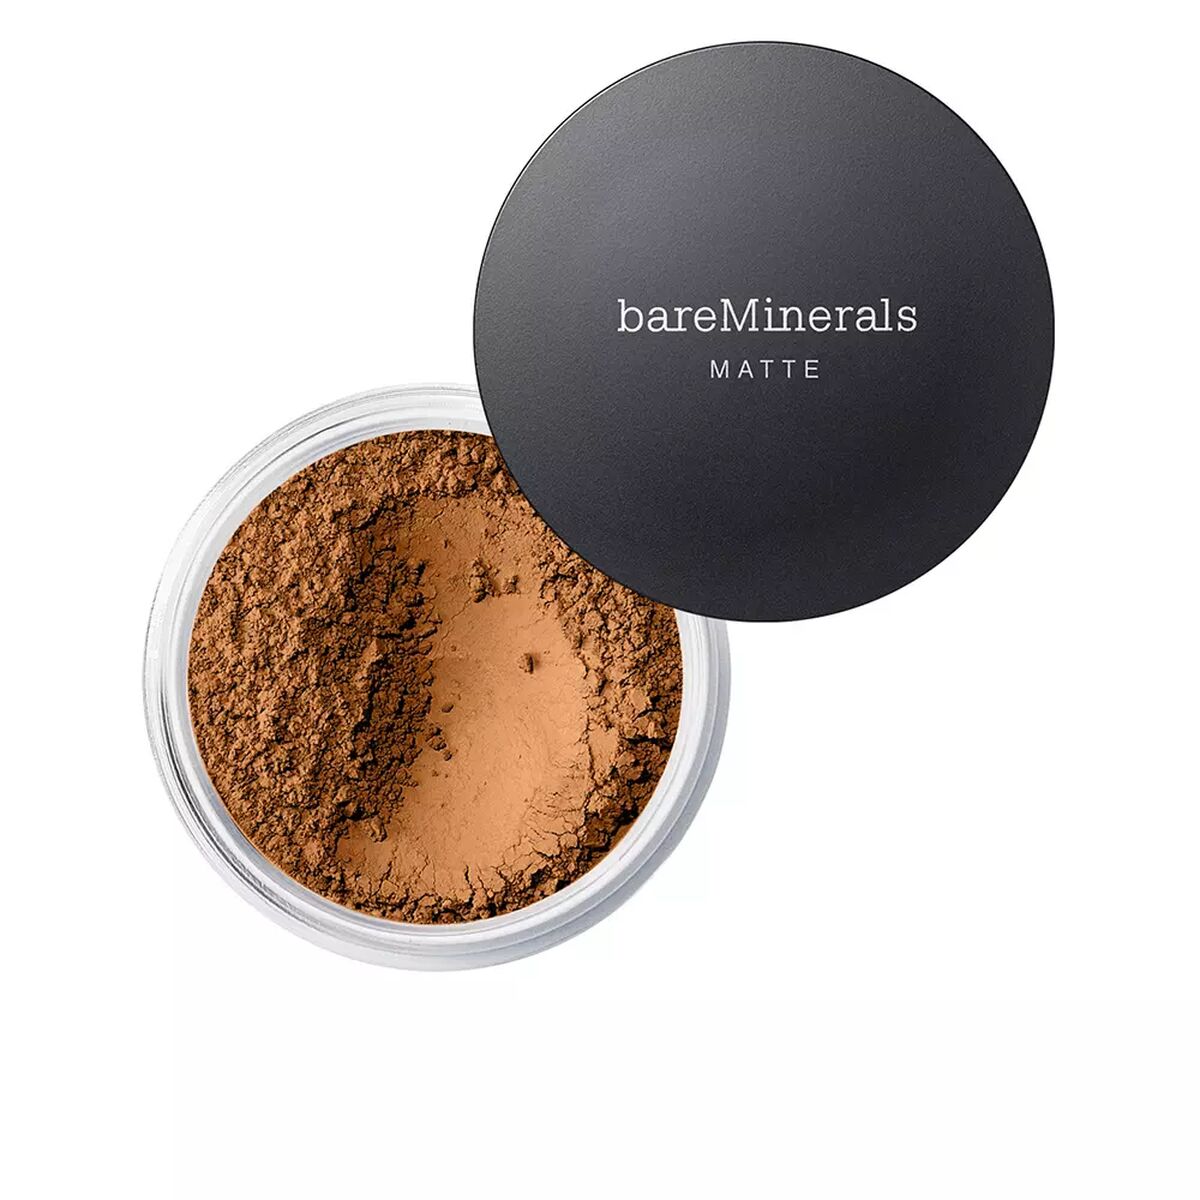 Praškasta make-up baze bareMinerals mat nº 24 neutralni tamni spf 15 6 g